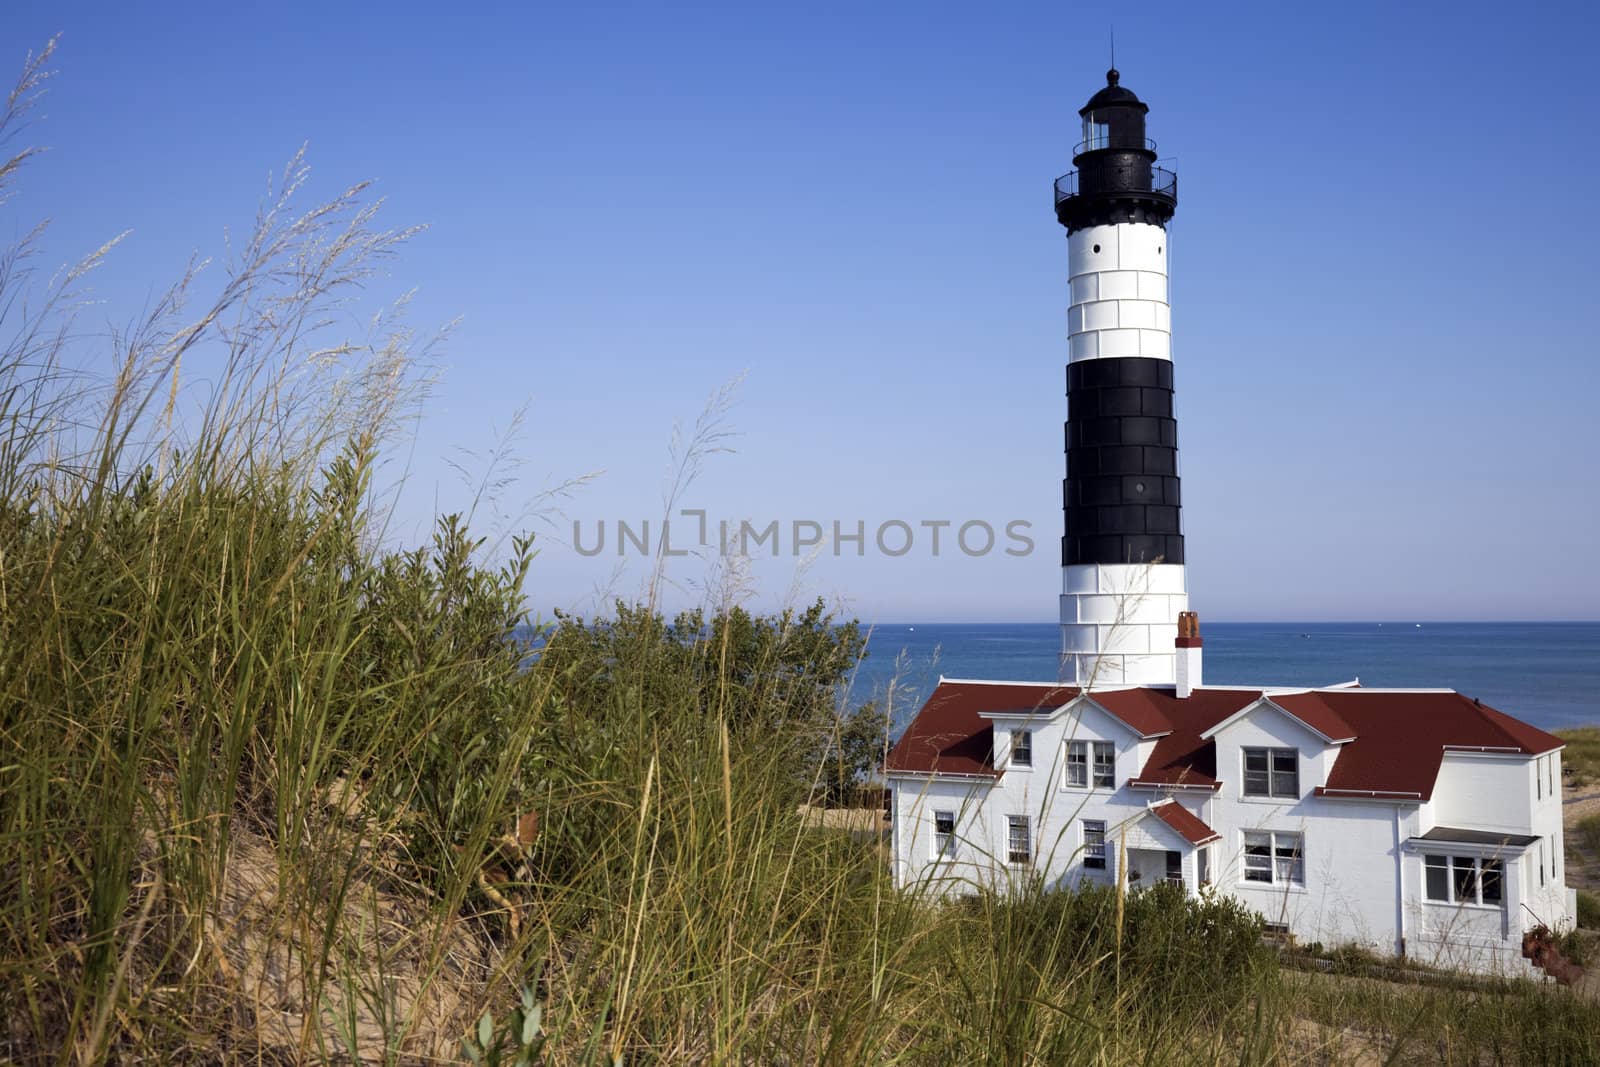 Big Sable Point Lighthouse, Michigan, USA.